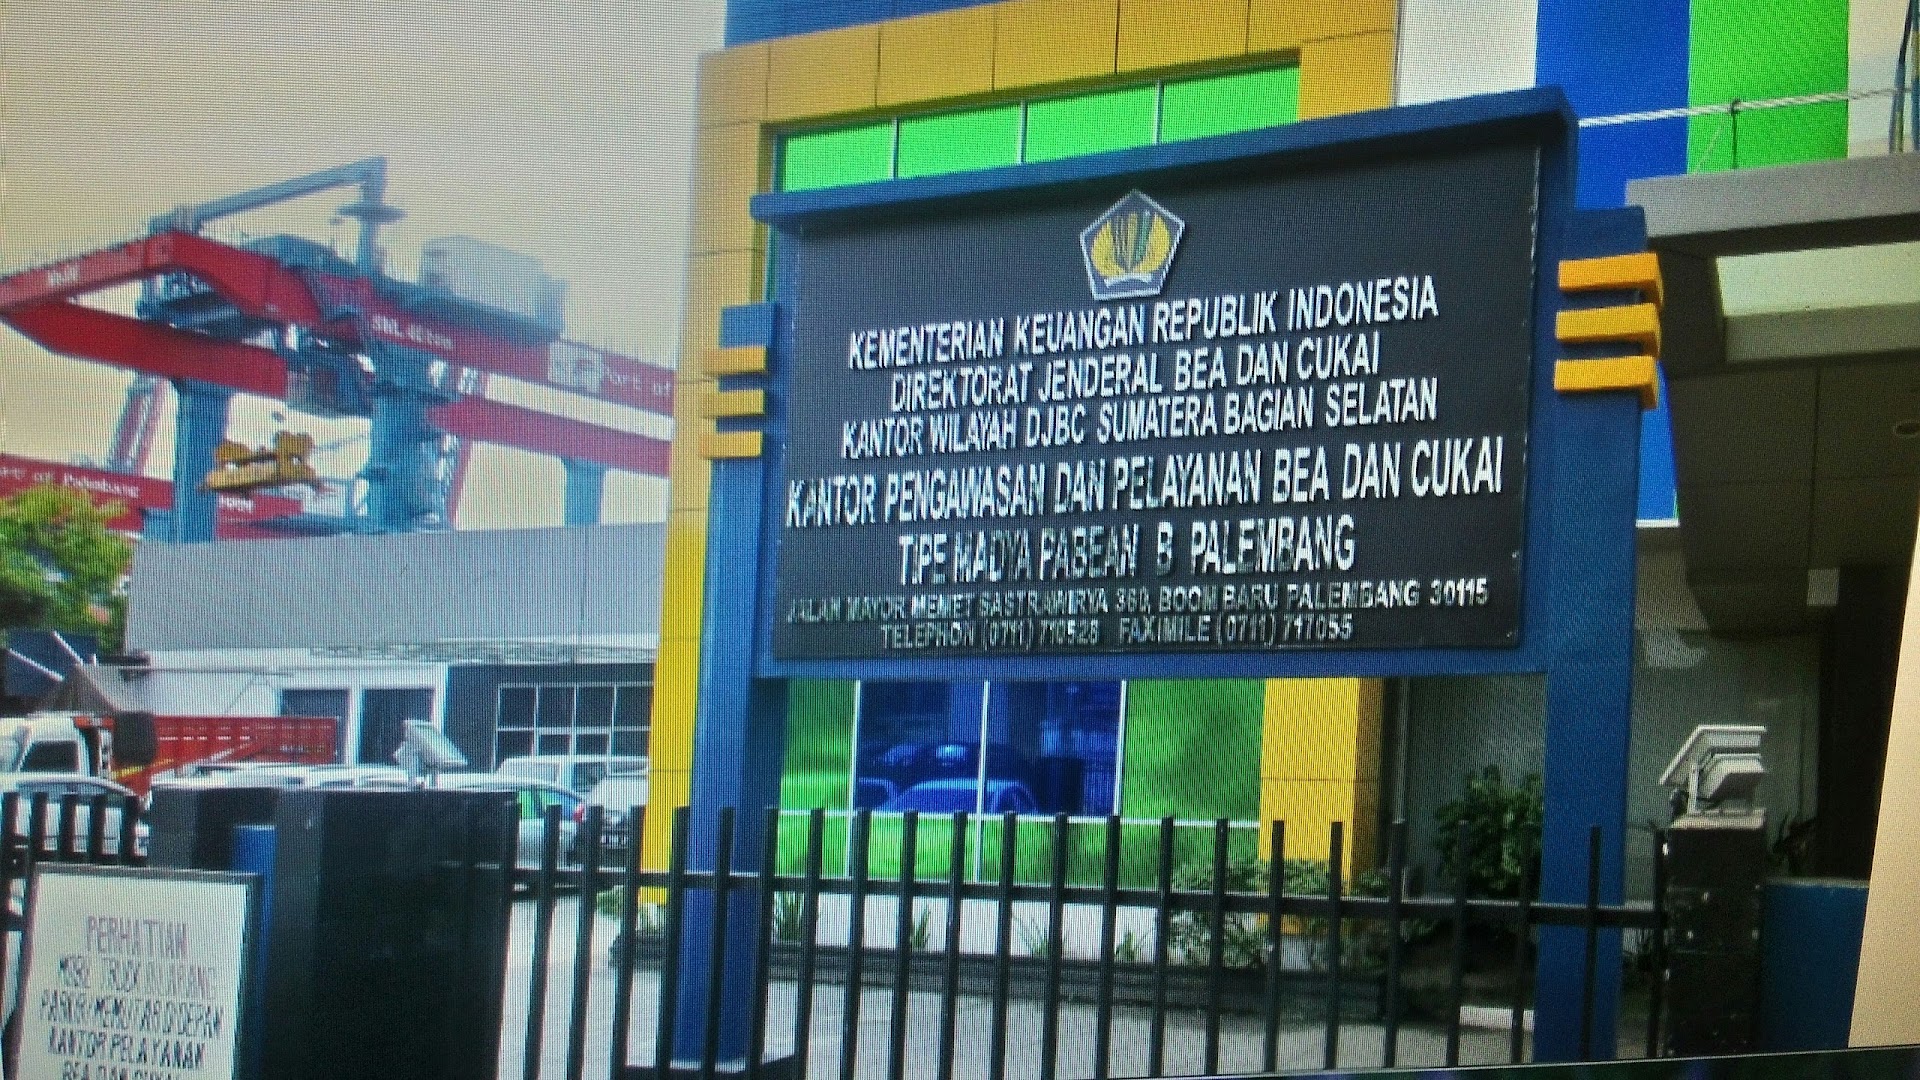 Gambar Kppbc Tipe Madya Pabean B Palembang ( Kppbc Tmp B Palembang)